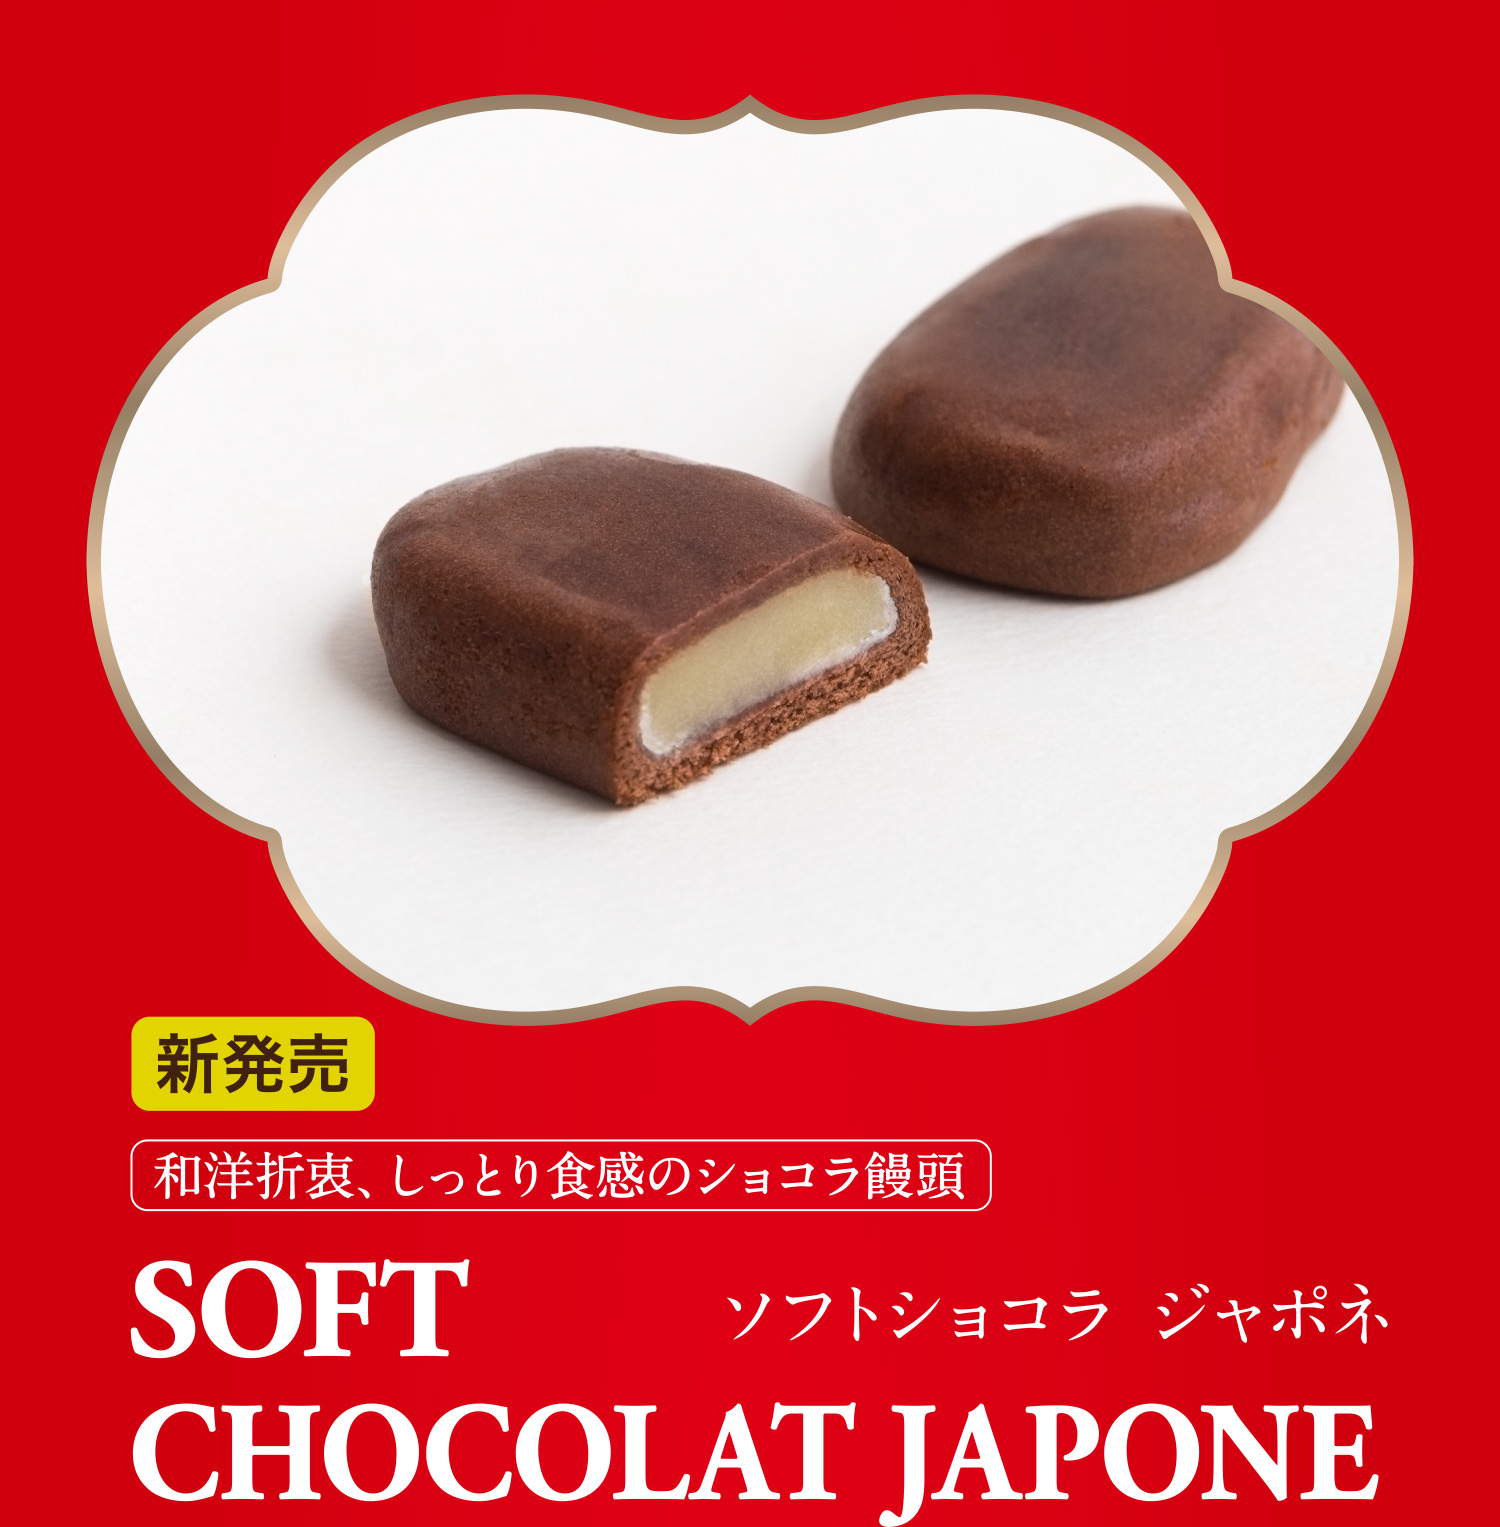 和洋折衷、しっとり食感のショコラ饅頭 ソフトショコラ ジャポネ 新発売